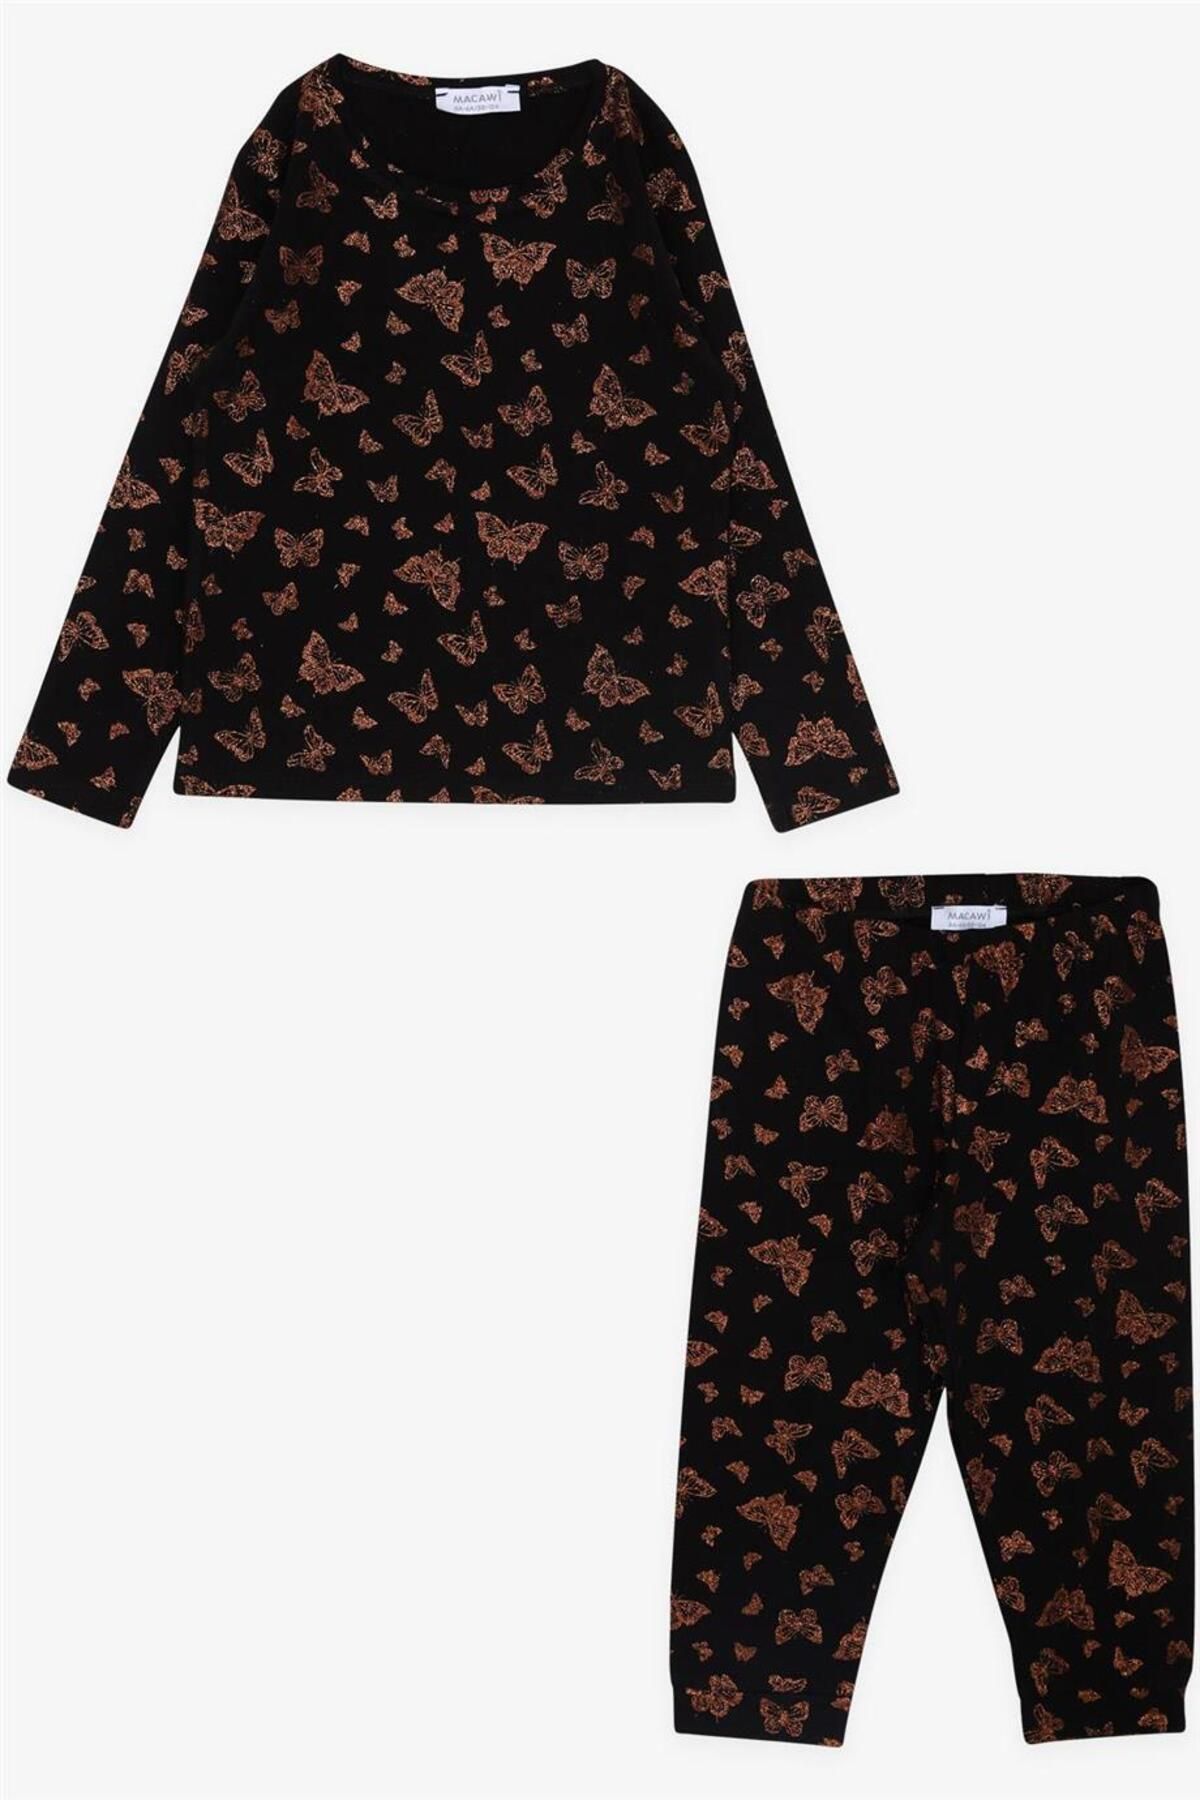 Macawi Kız Çocuk Pijama Takımı Simli Kelebek Desenli Siyah